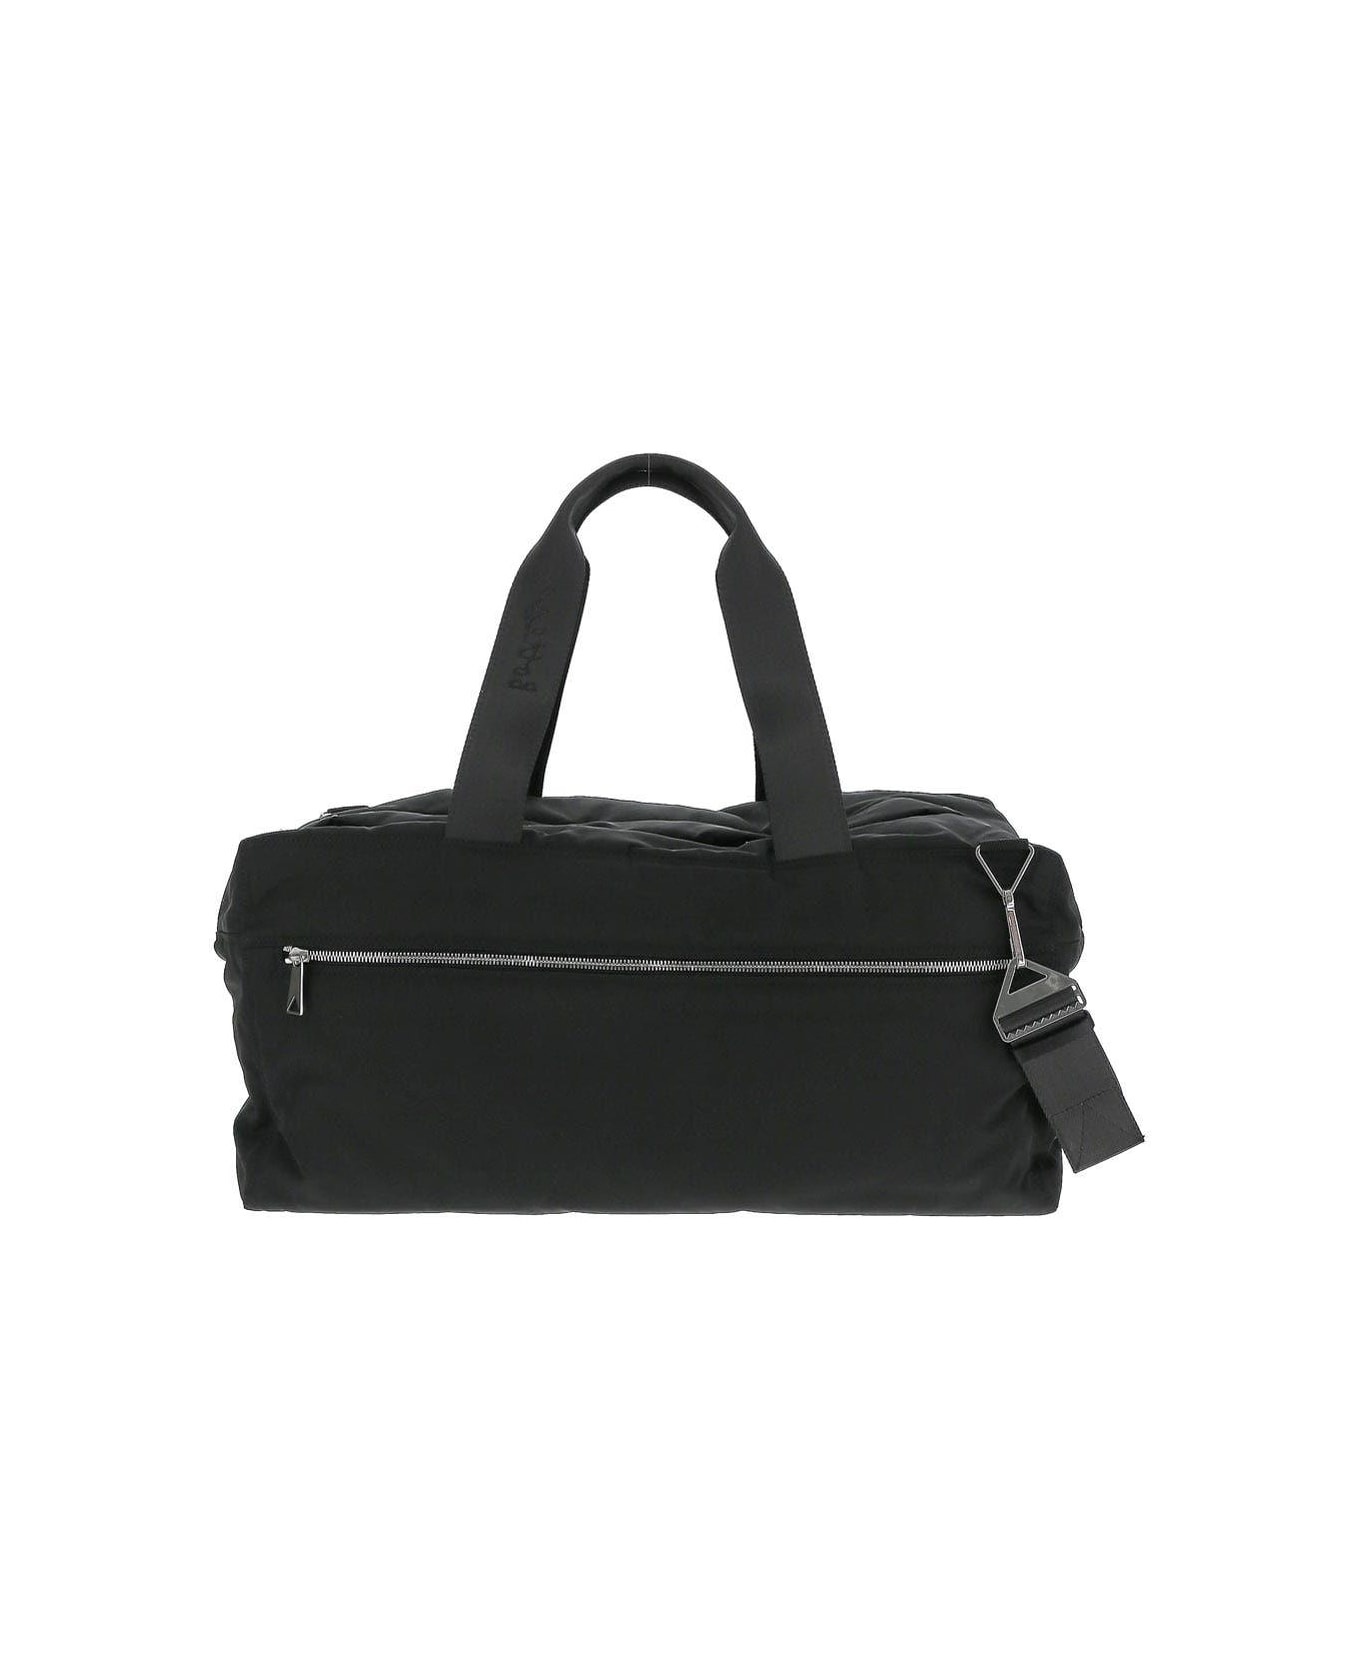 Black Duffel Bag - 1